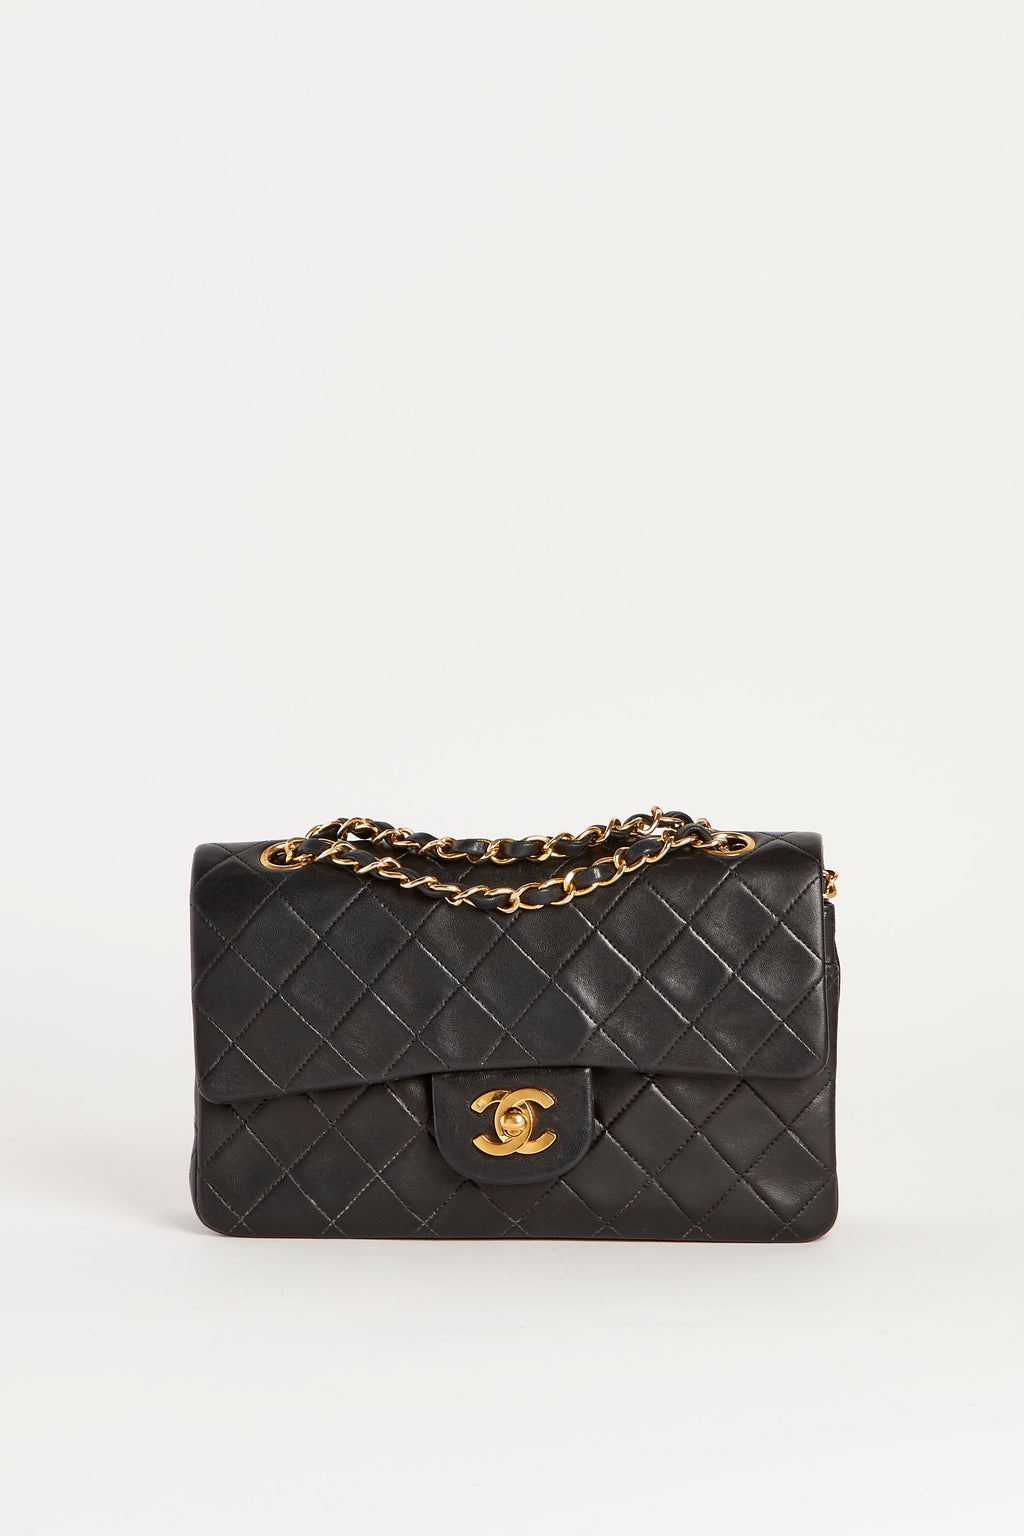 90s Chanel Black Lambskin Small Double Flap Shoulder Bag 24k GHW